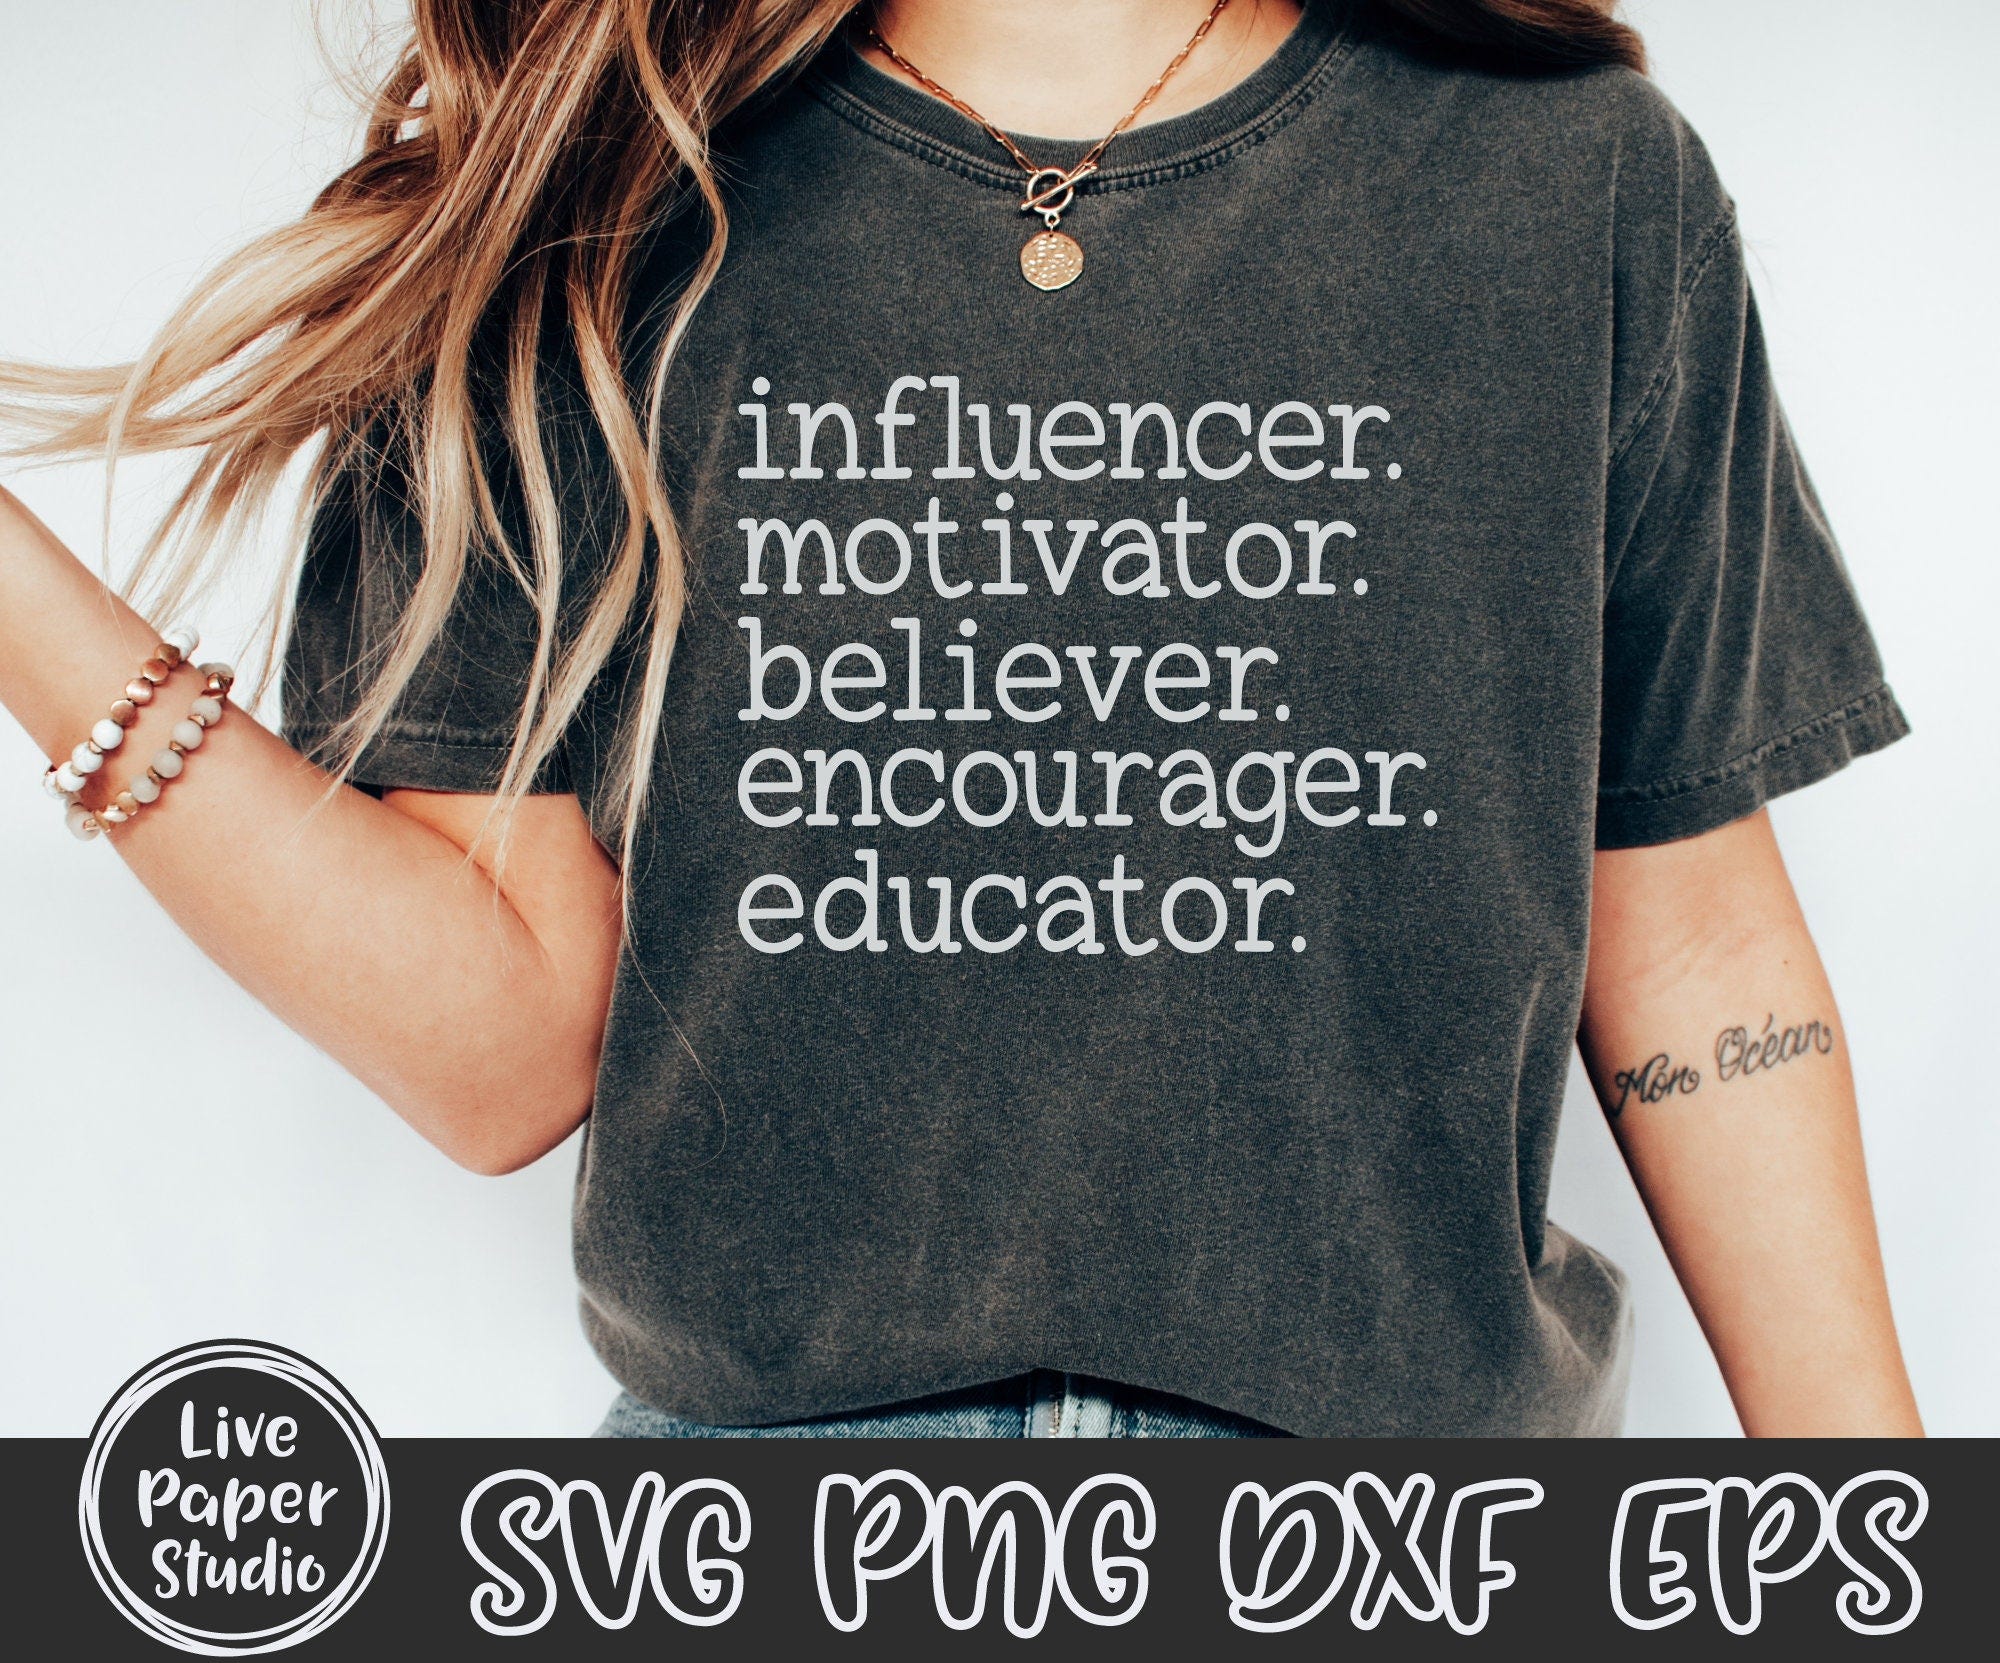 Educator SVG, Teacher Svg, Influencer Motivator Believer SVG, Teacher Gift, Teacher Shirt, Teacher Life, Digital Download Png, Dxf, Eps File